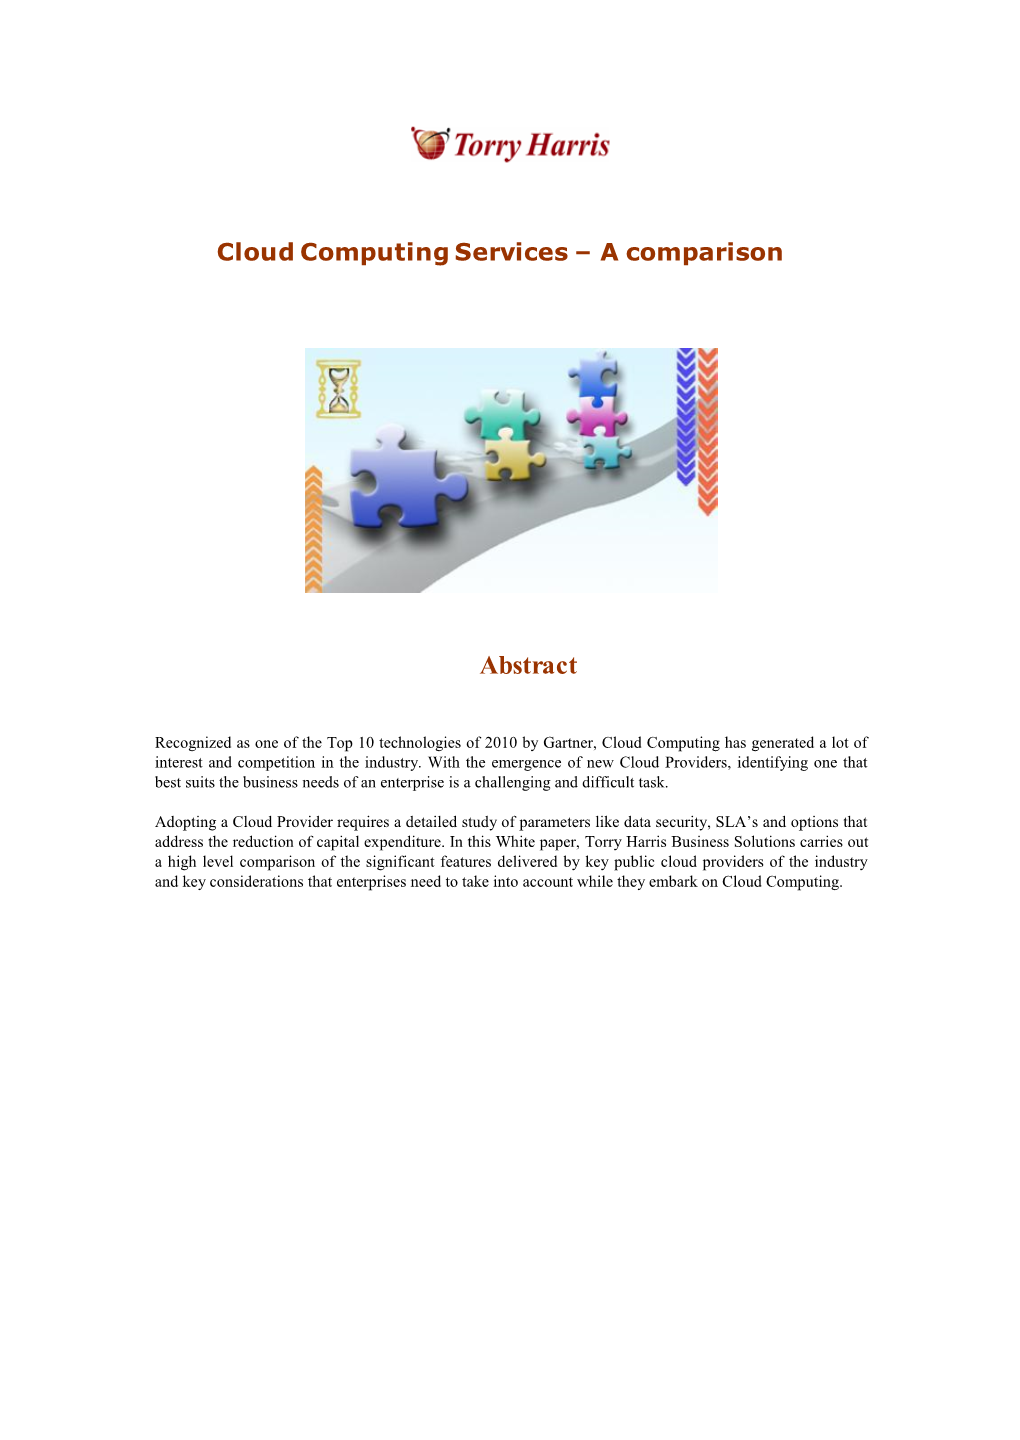 Cloud Computing Services – a Comparison